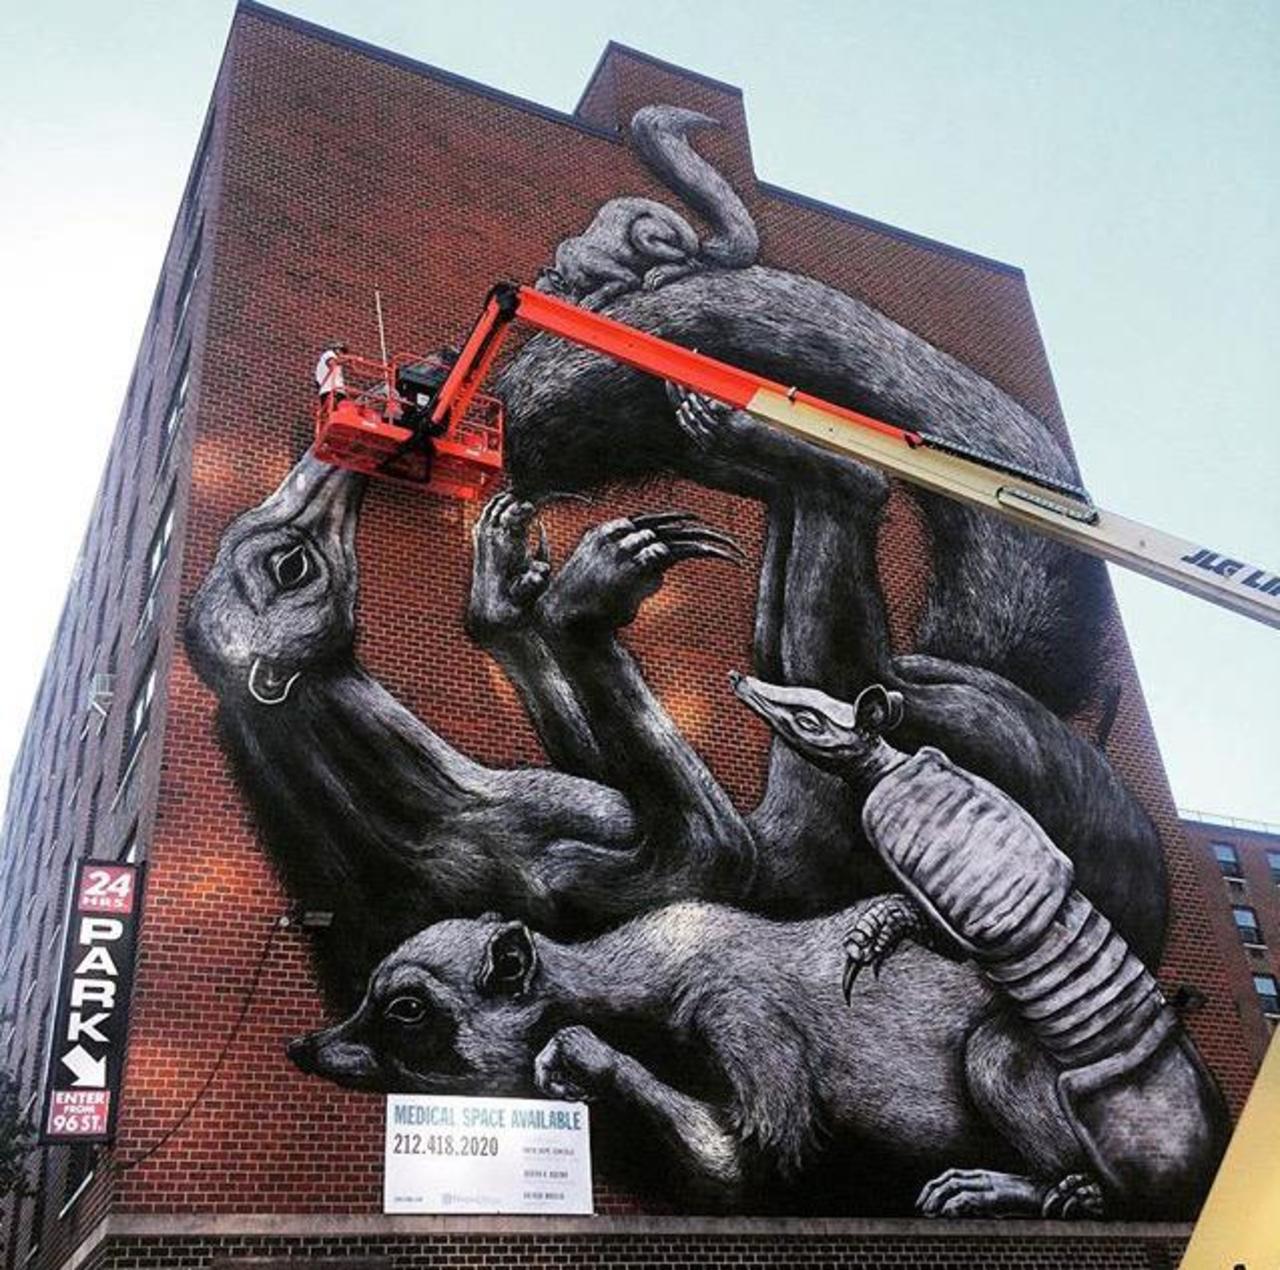 https://goo.gl/7kifqw RT GoogleStreetArt: Street Art in progress by ROA in NYC

#art #graffiti #mural #streetart http://t.co/9TqGrxAQtK